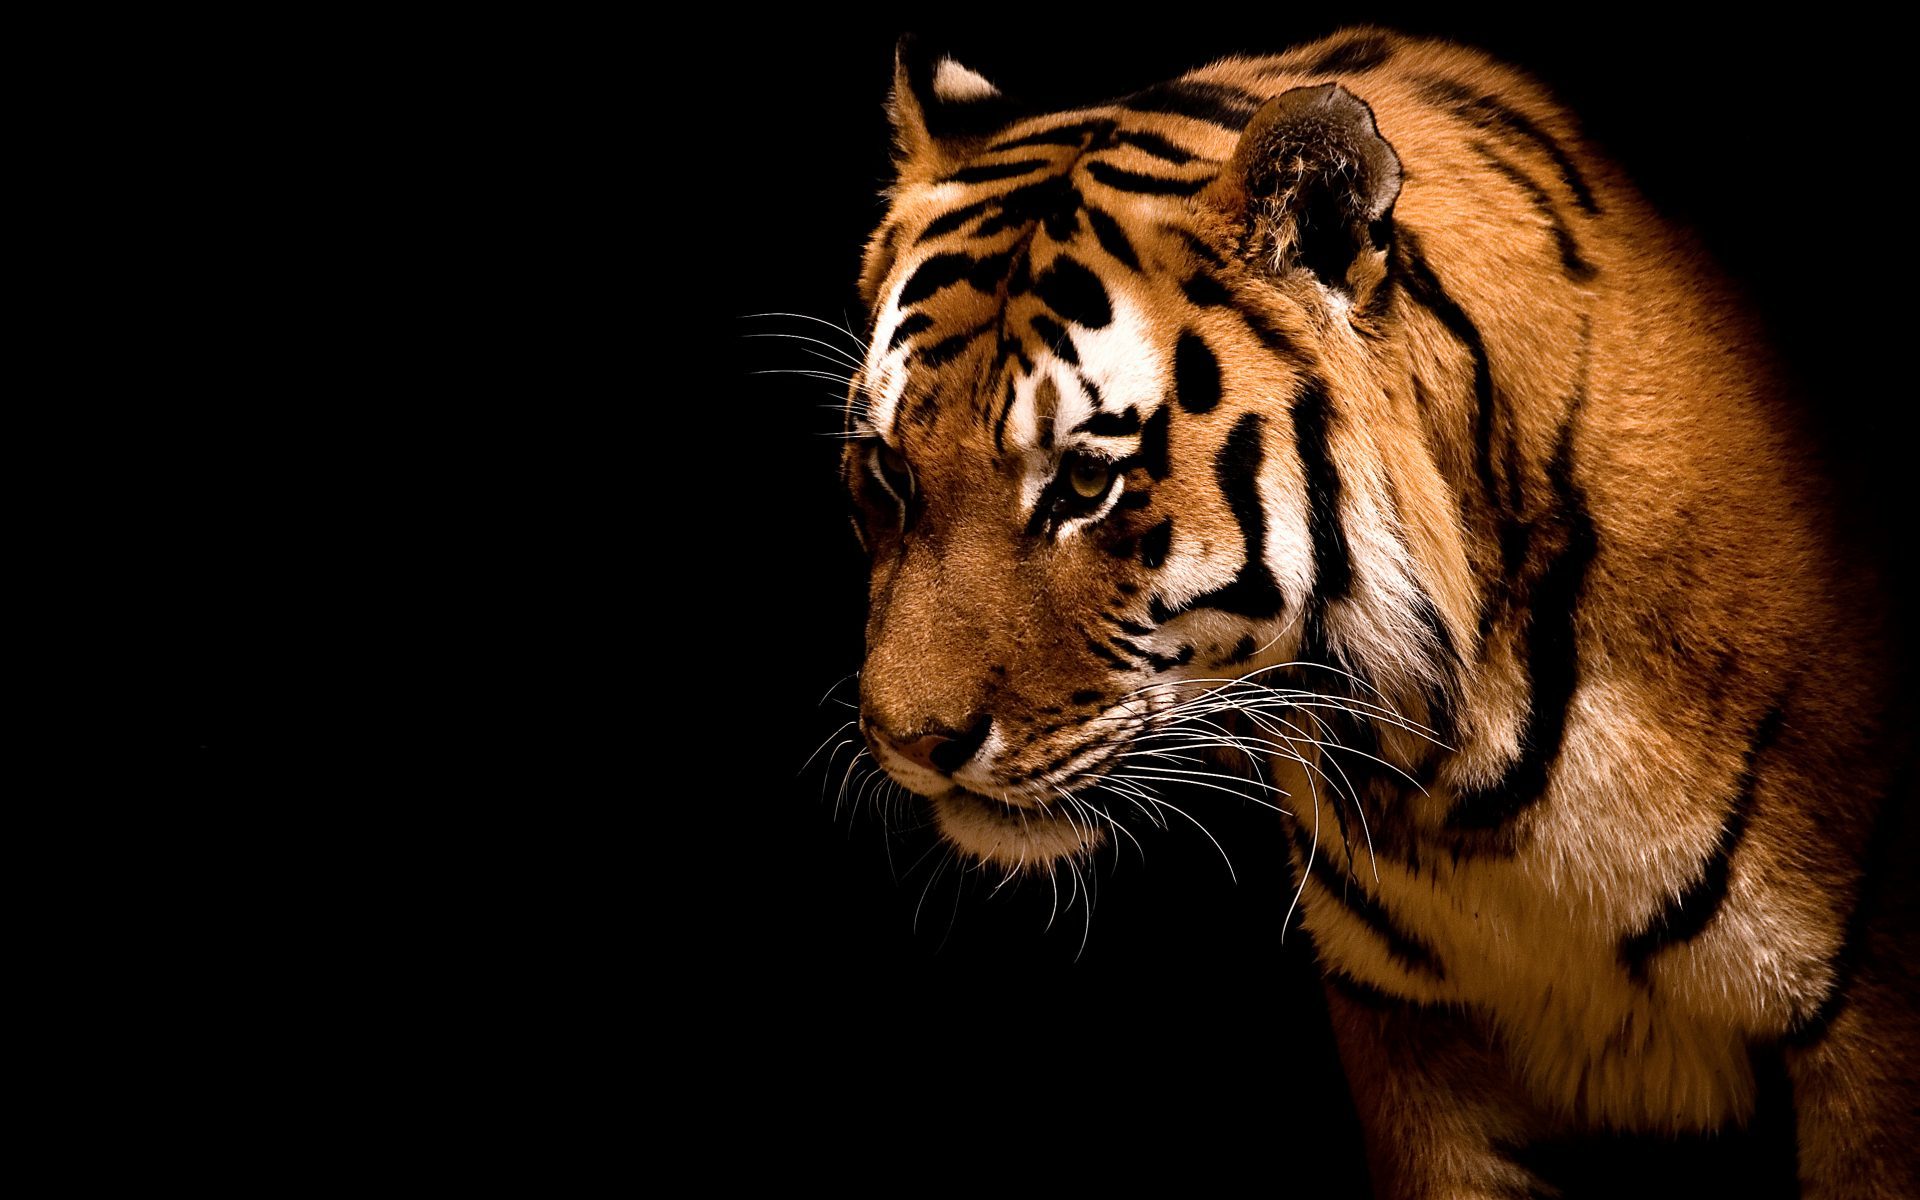 tigers, animals, black Image for desktop